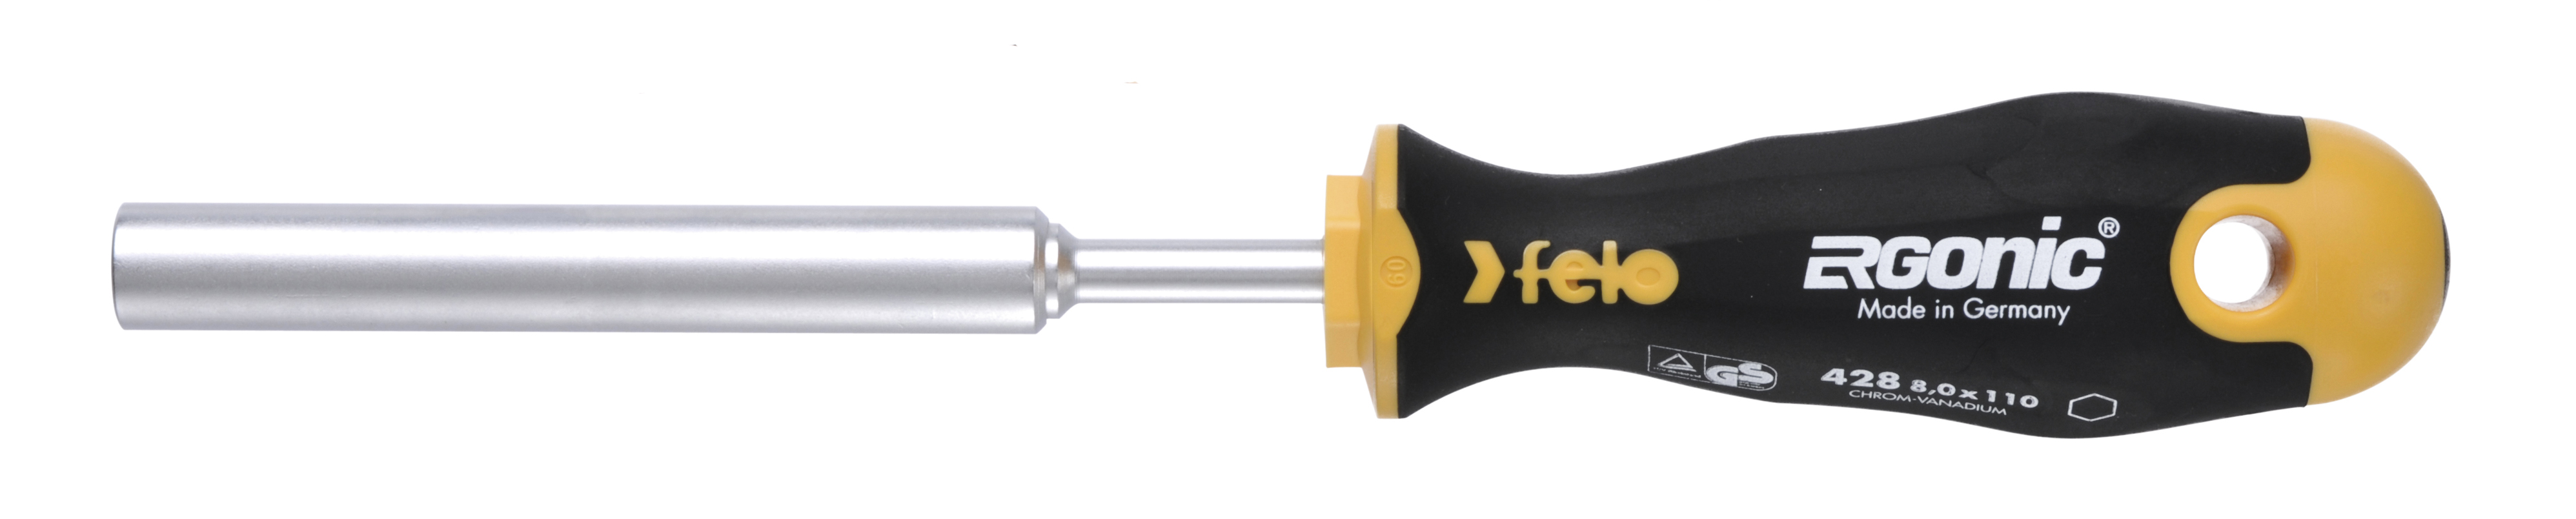 Отвертка Felo Ergonic M-TEC 42806030 торцевой ключ 6,0X110 диэлектрический ключ отвёртка izeltas 4773190120 1000v торцевой 12мм длина 230 мм